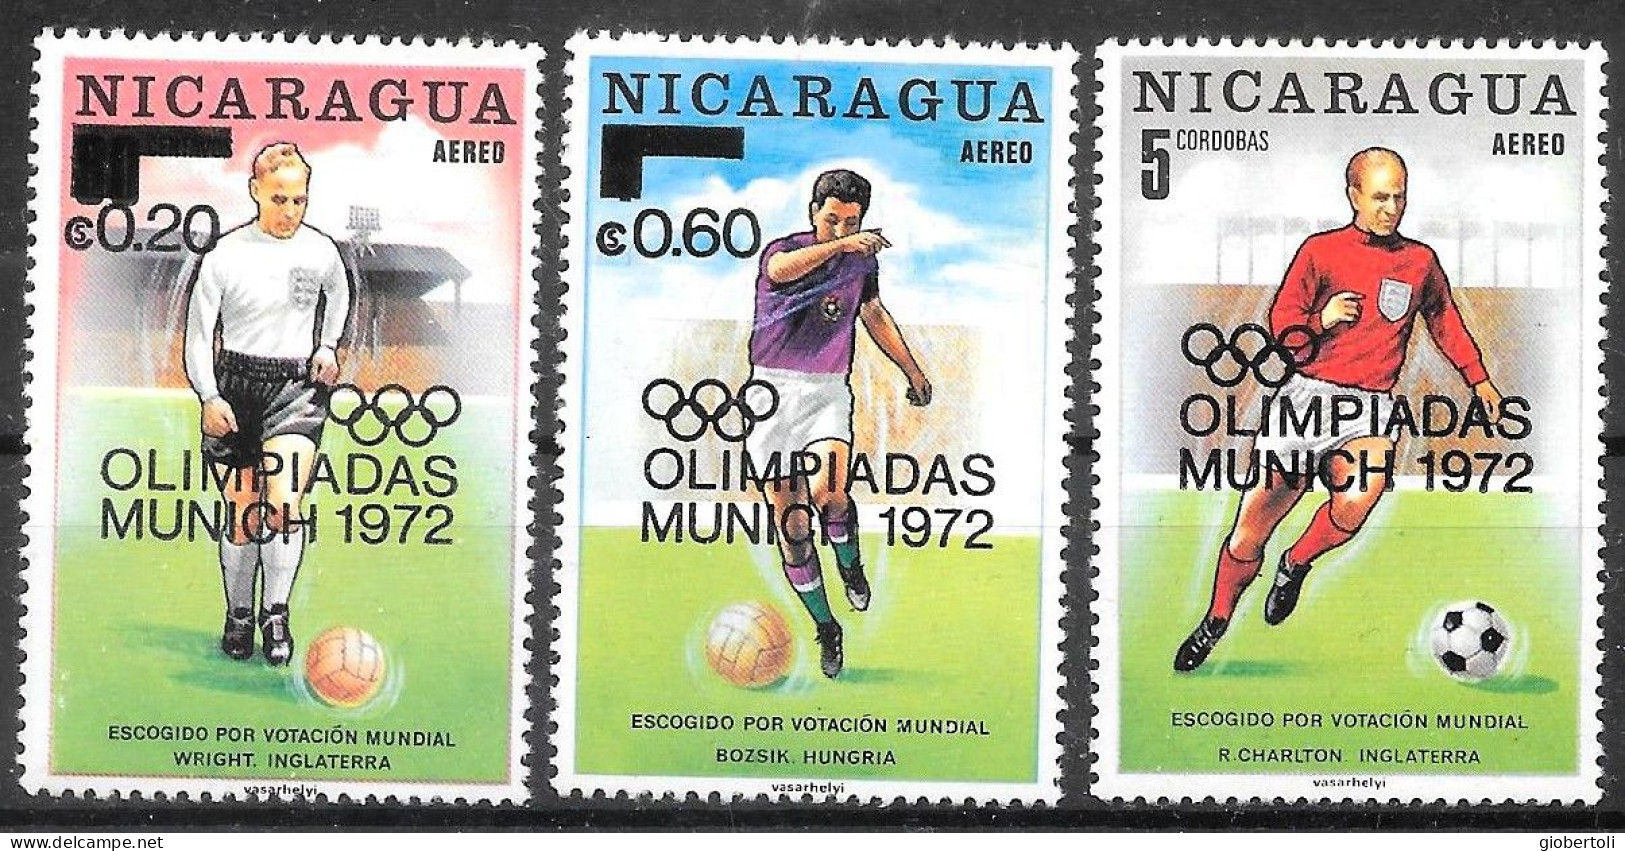 Nicaragua: Gioco Del Calcio, Football Game, Le Jeu Du Calcio - Ete 1972: Munich